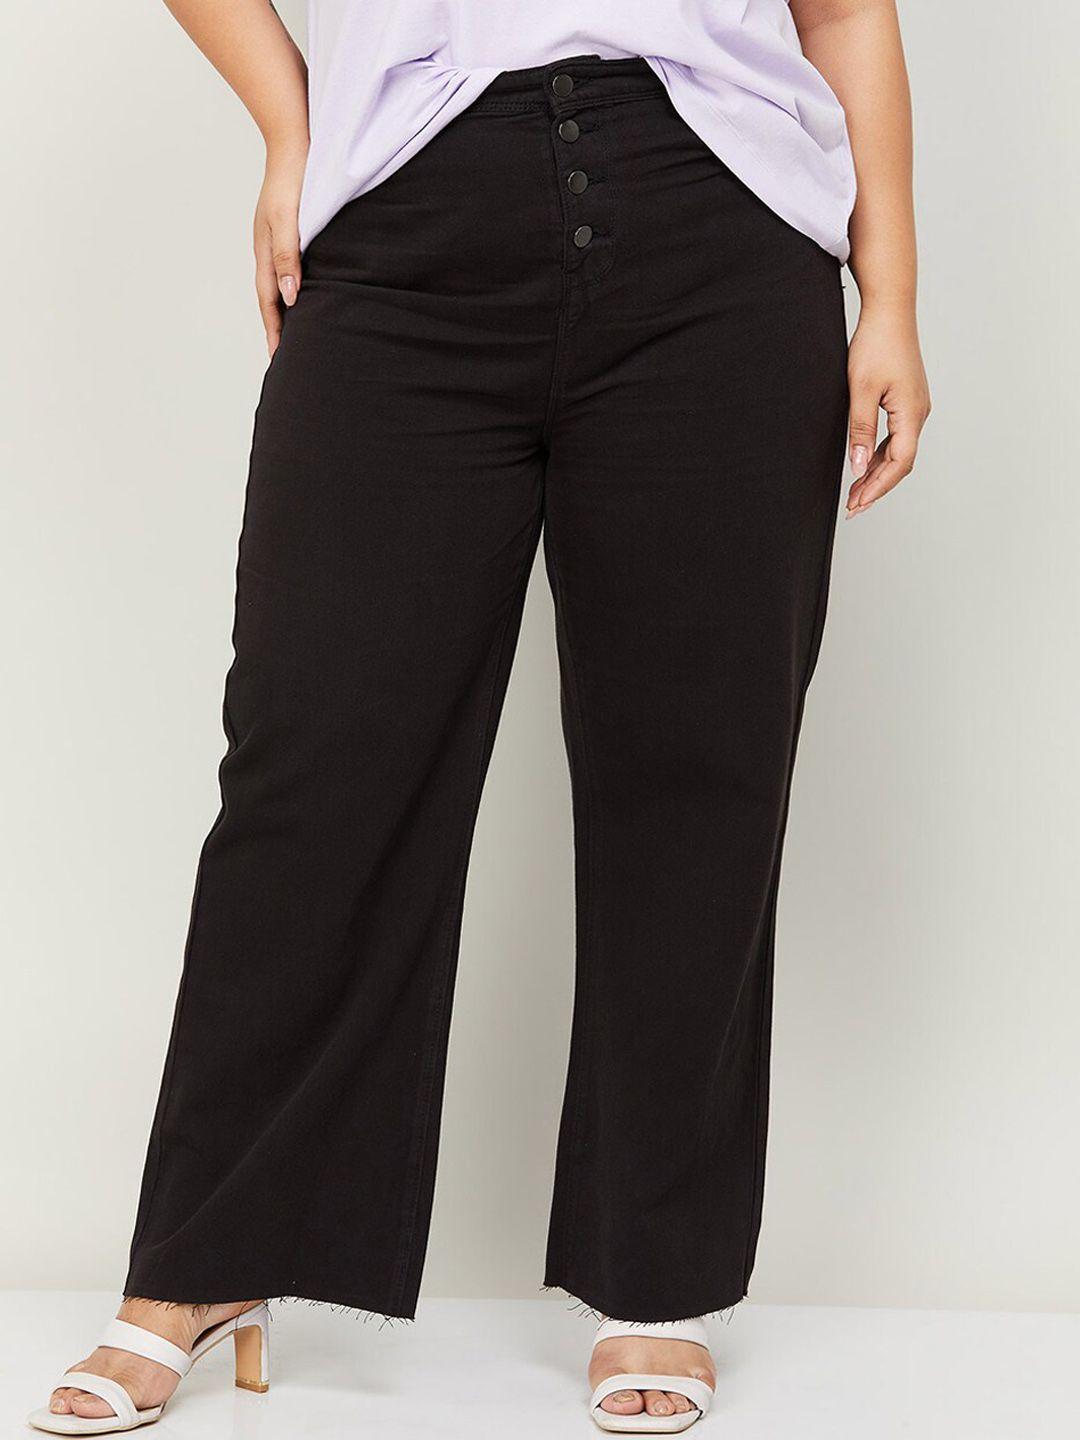 nexus-women-plus-size-wide-leg-pure-cotton-jeans